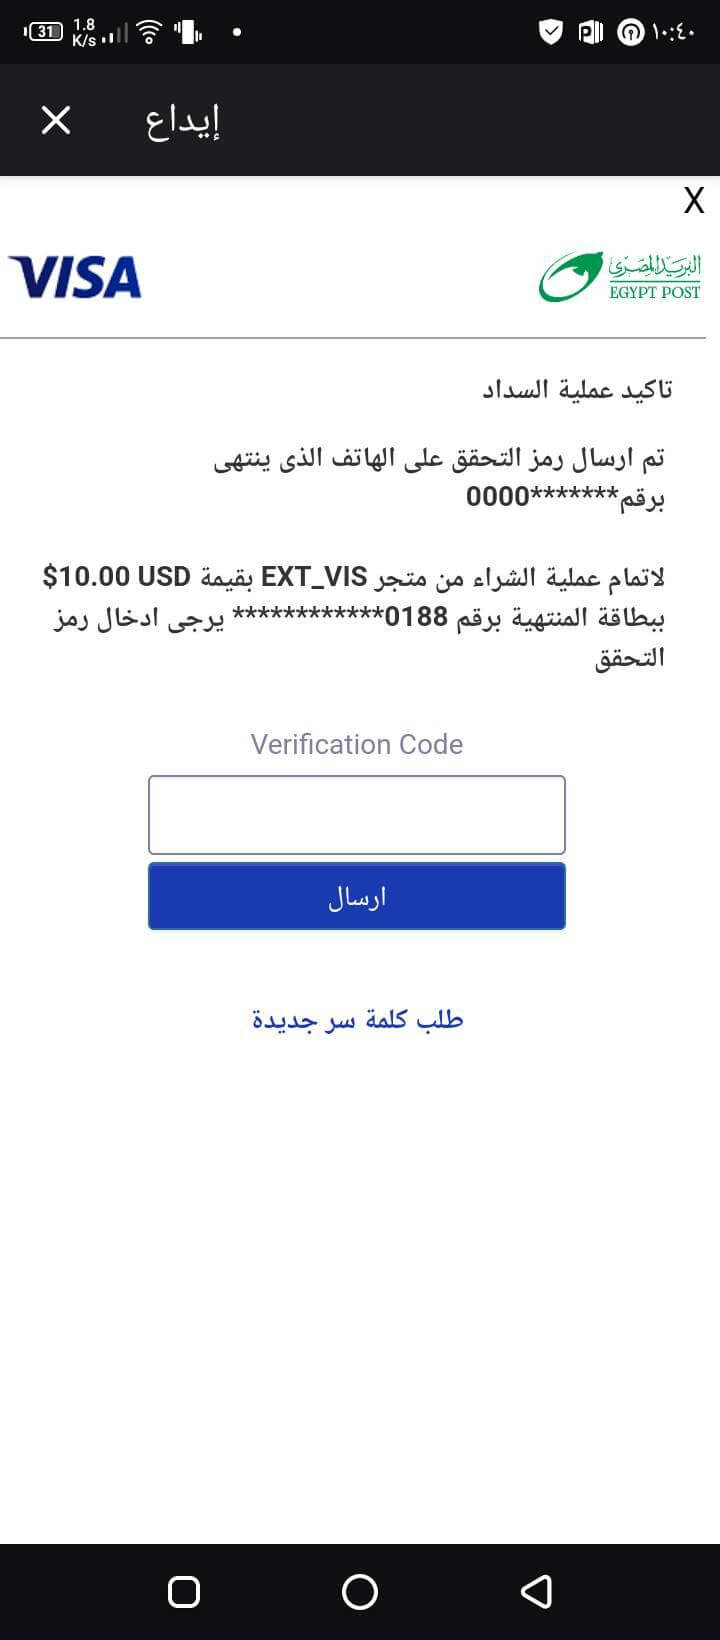 صفحة ايداع داخل منصة Olymp trade بيضاء البريد المصري VISA تأكيد عملية السداد تم ارسال رمز التحقق Verification Code